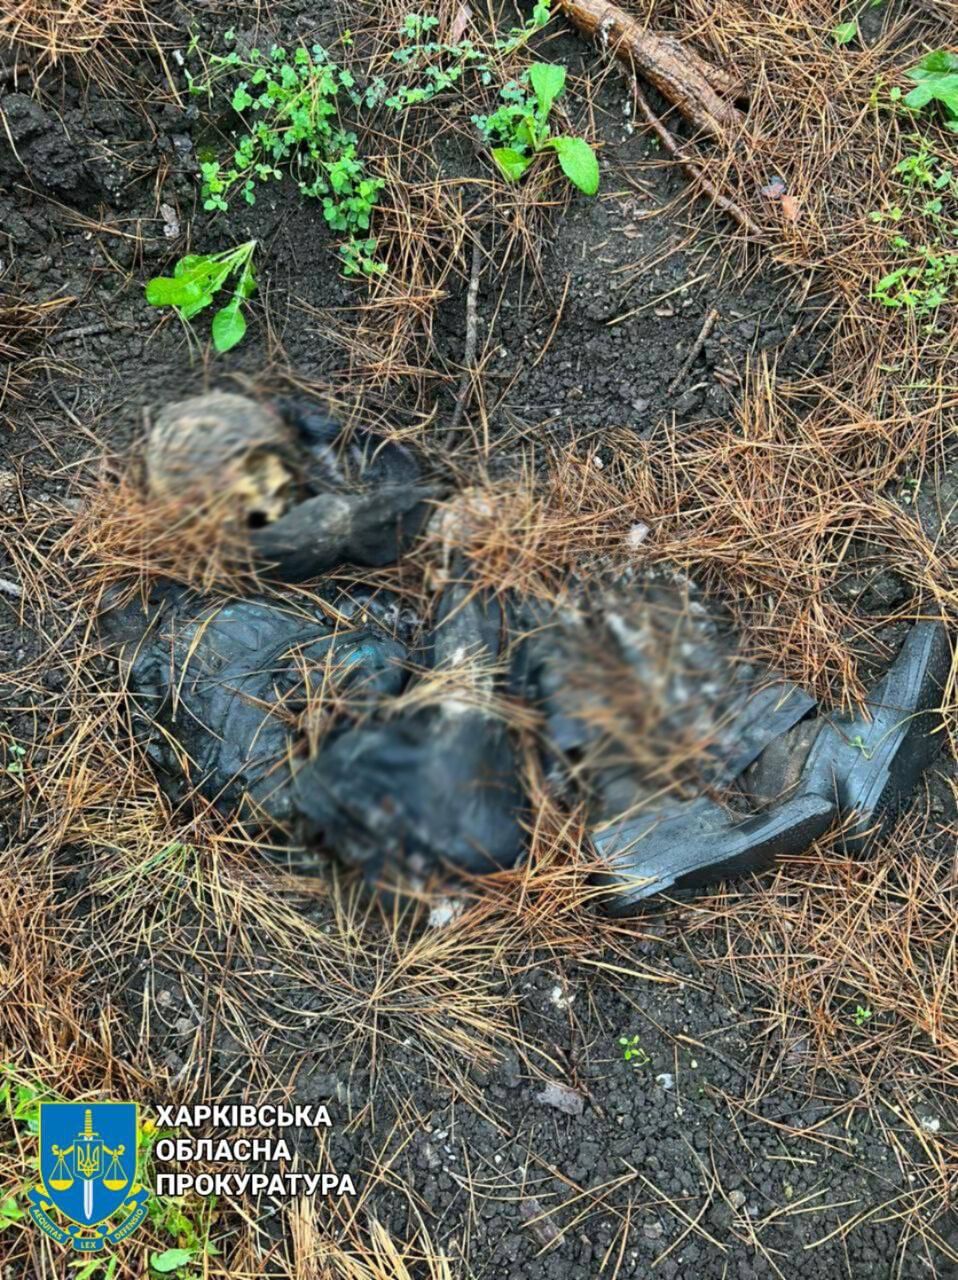 На Харьковщине оккупанты замучили мужчину и оставили тело в лесопосадке: руки были связаны шнуром